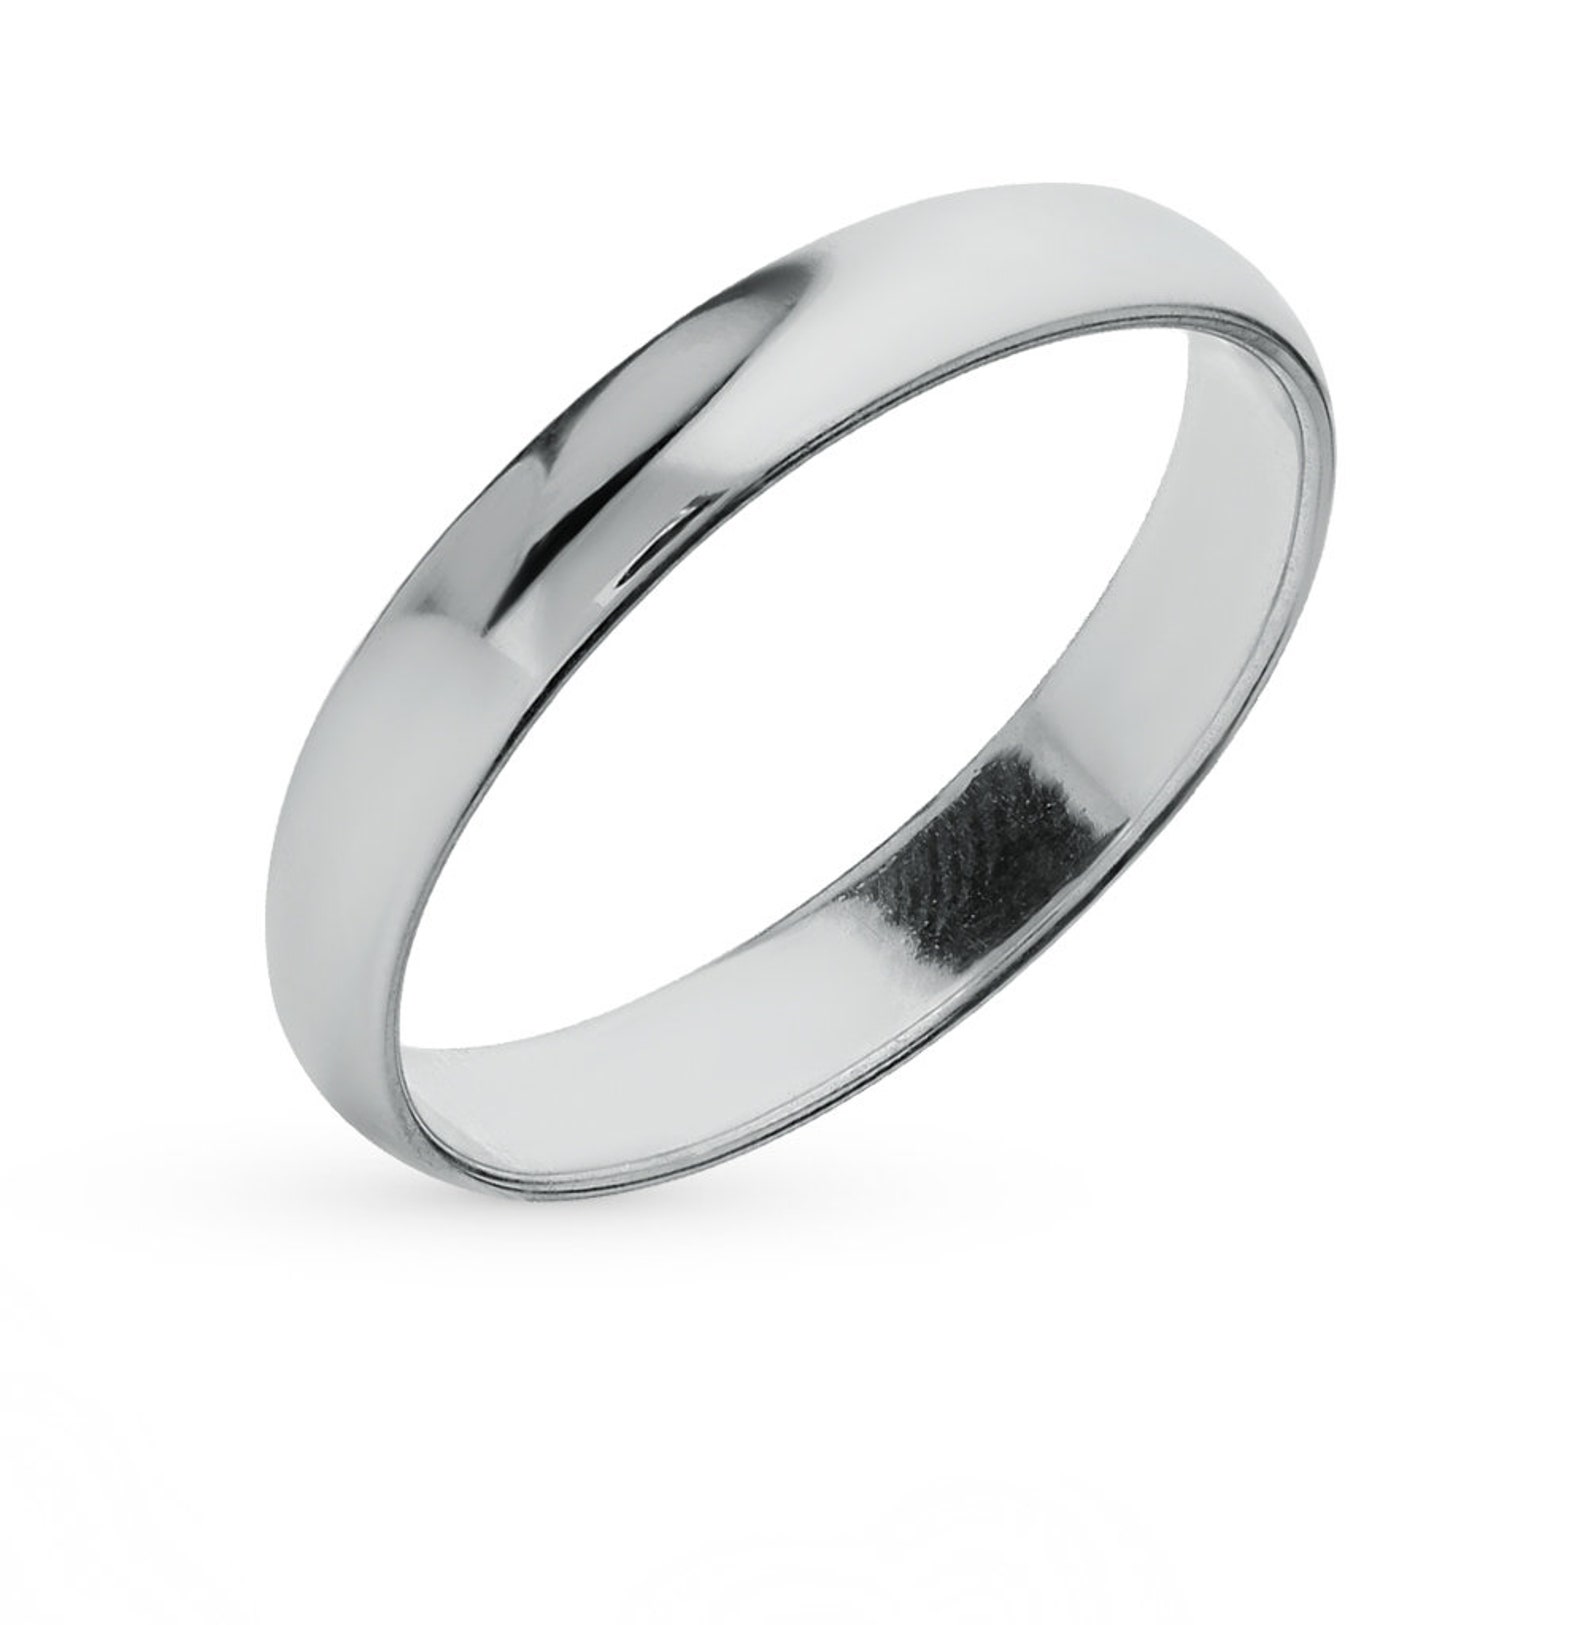 Можно обручальное кольцо серебряное. Парные кольца Санлайт серебро. Обручальное кольцо мужское серебро Санлайт. Санлайт кольцо мужское серебро. Санлайт обручальное кольцо мужское.